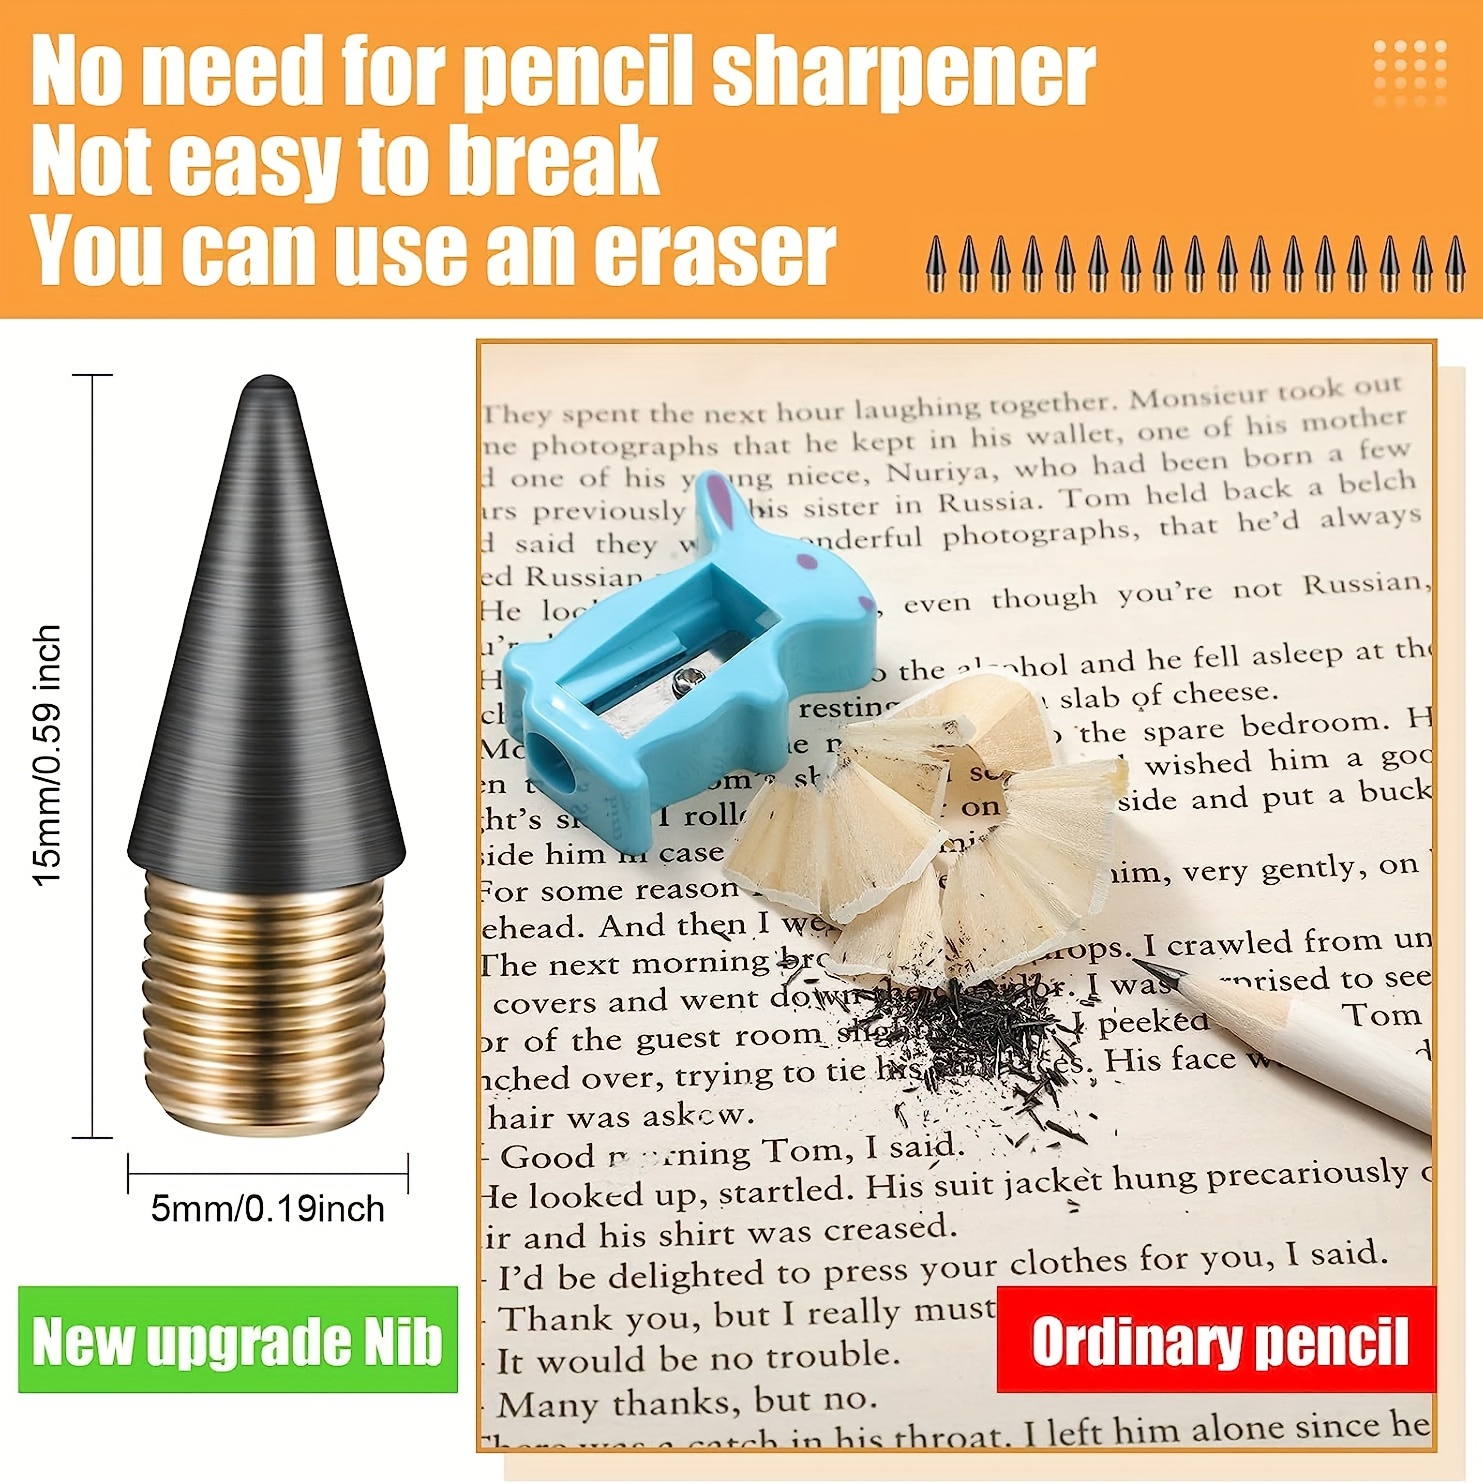 Beadable Pencil Eraser and Tip Refills | Creepsakes Shop